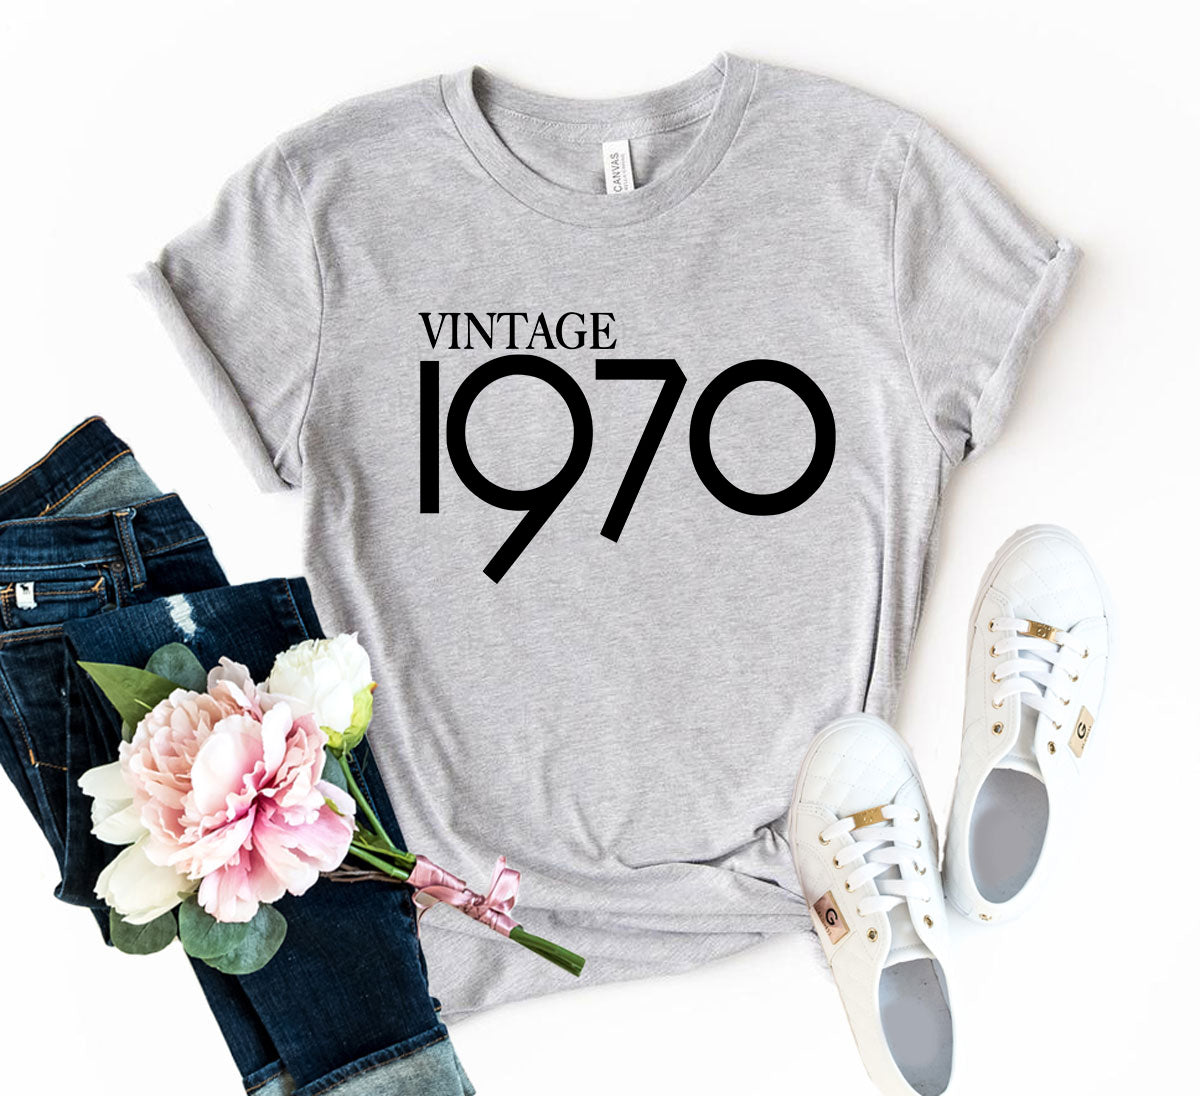 DT0155 Vintage 1970 Shirt